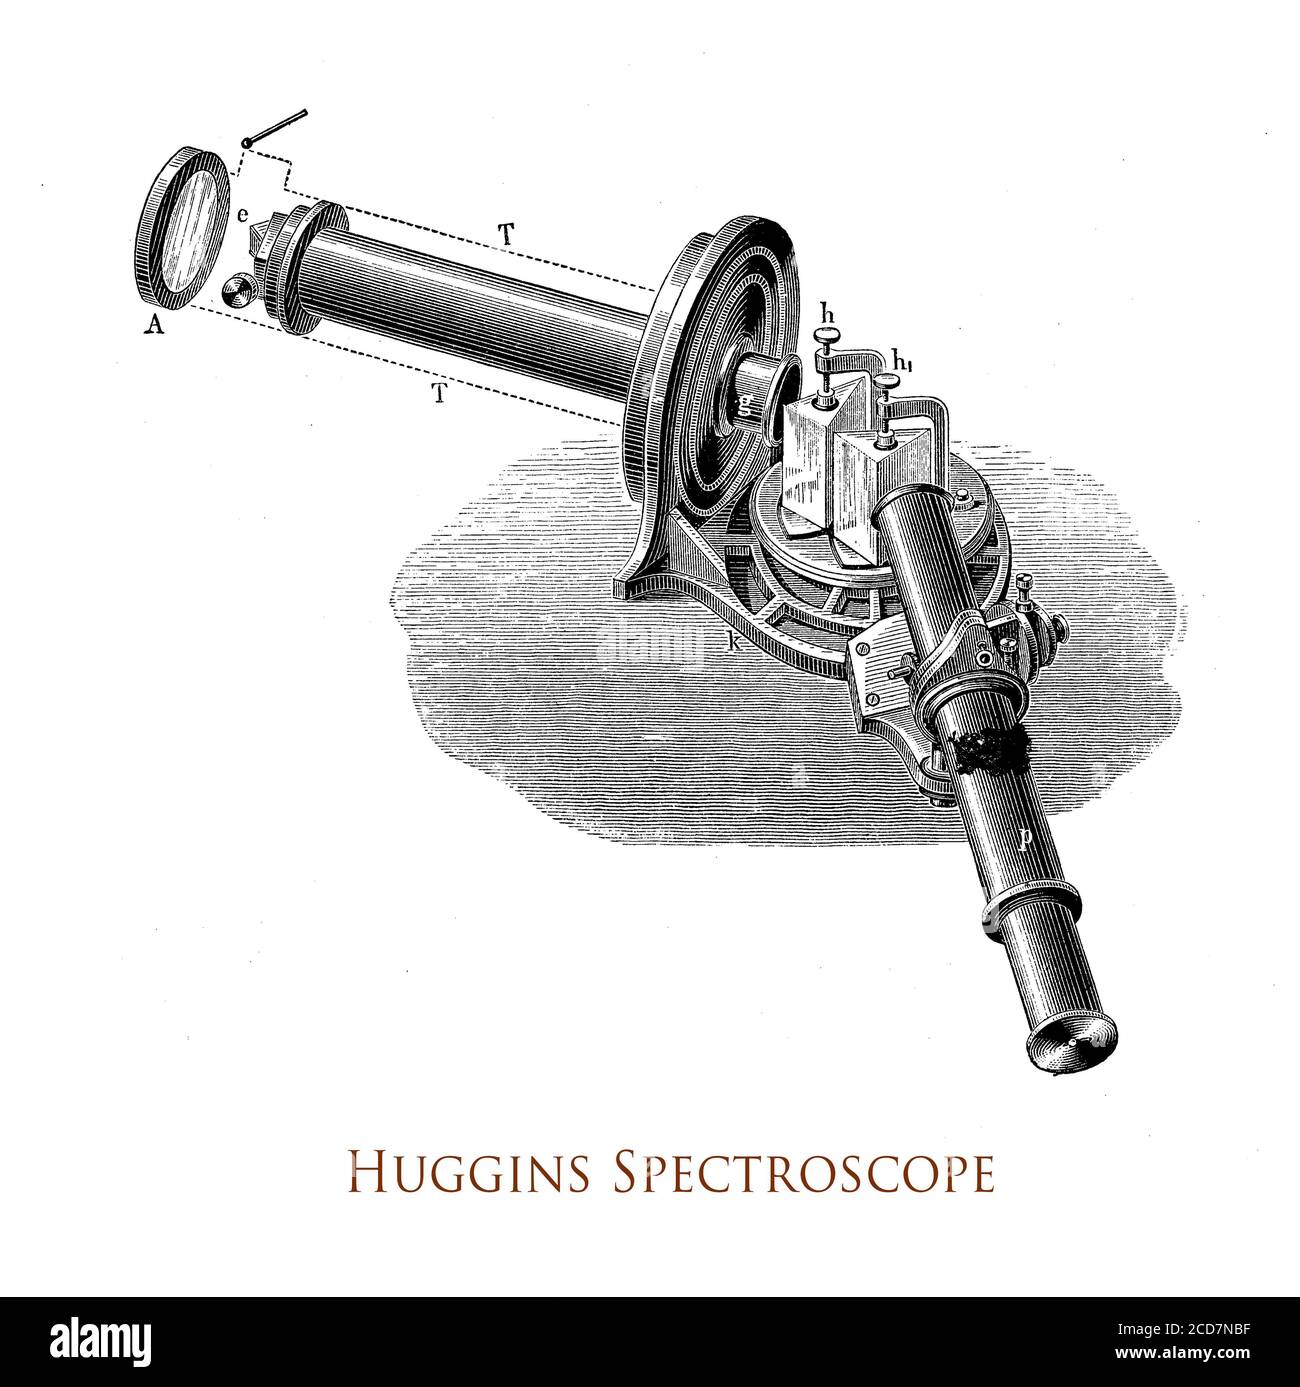 Spectroscope Huggins développé par Sir William Huggins avec la technique innovation de en élargissant la fente et en mesurant le radial vitesse d'une étoile et d'étudier l'évolution de l'univers Banque D'Images